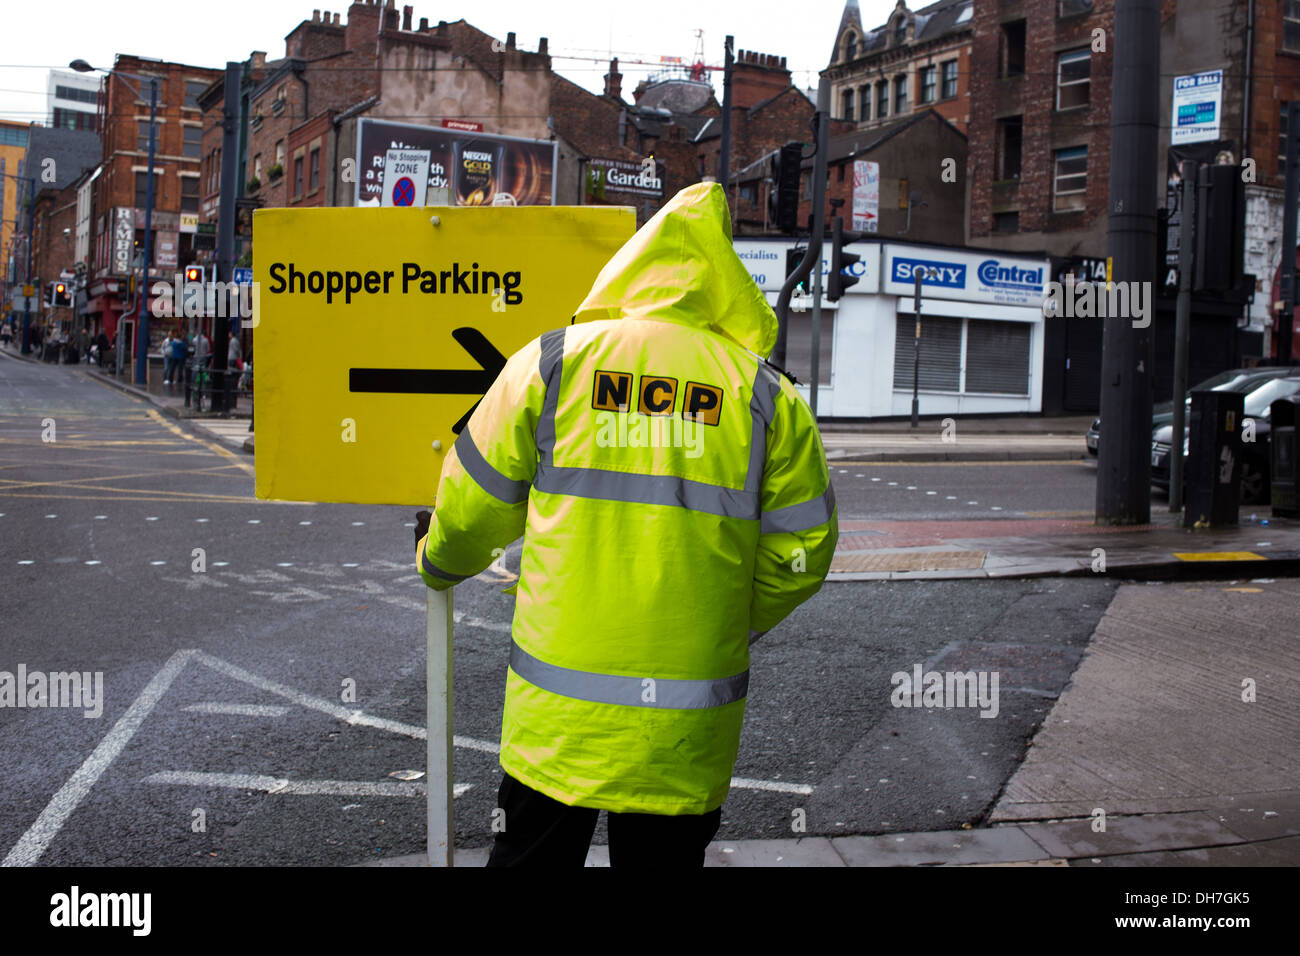 Ein NCP Parkplatz keinen vertrauenswürdigen Eindruck leitet Treiber Shopper Parken in einem Parkhaus in Manchester City Centre Stockfoto